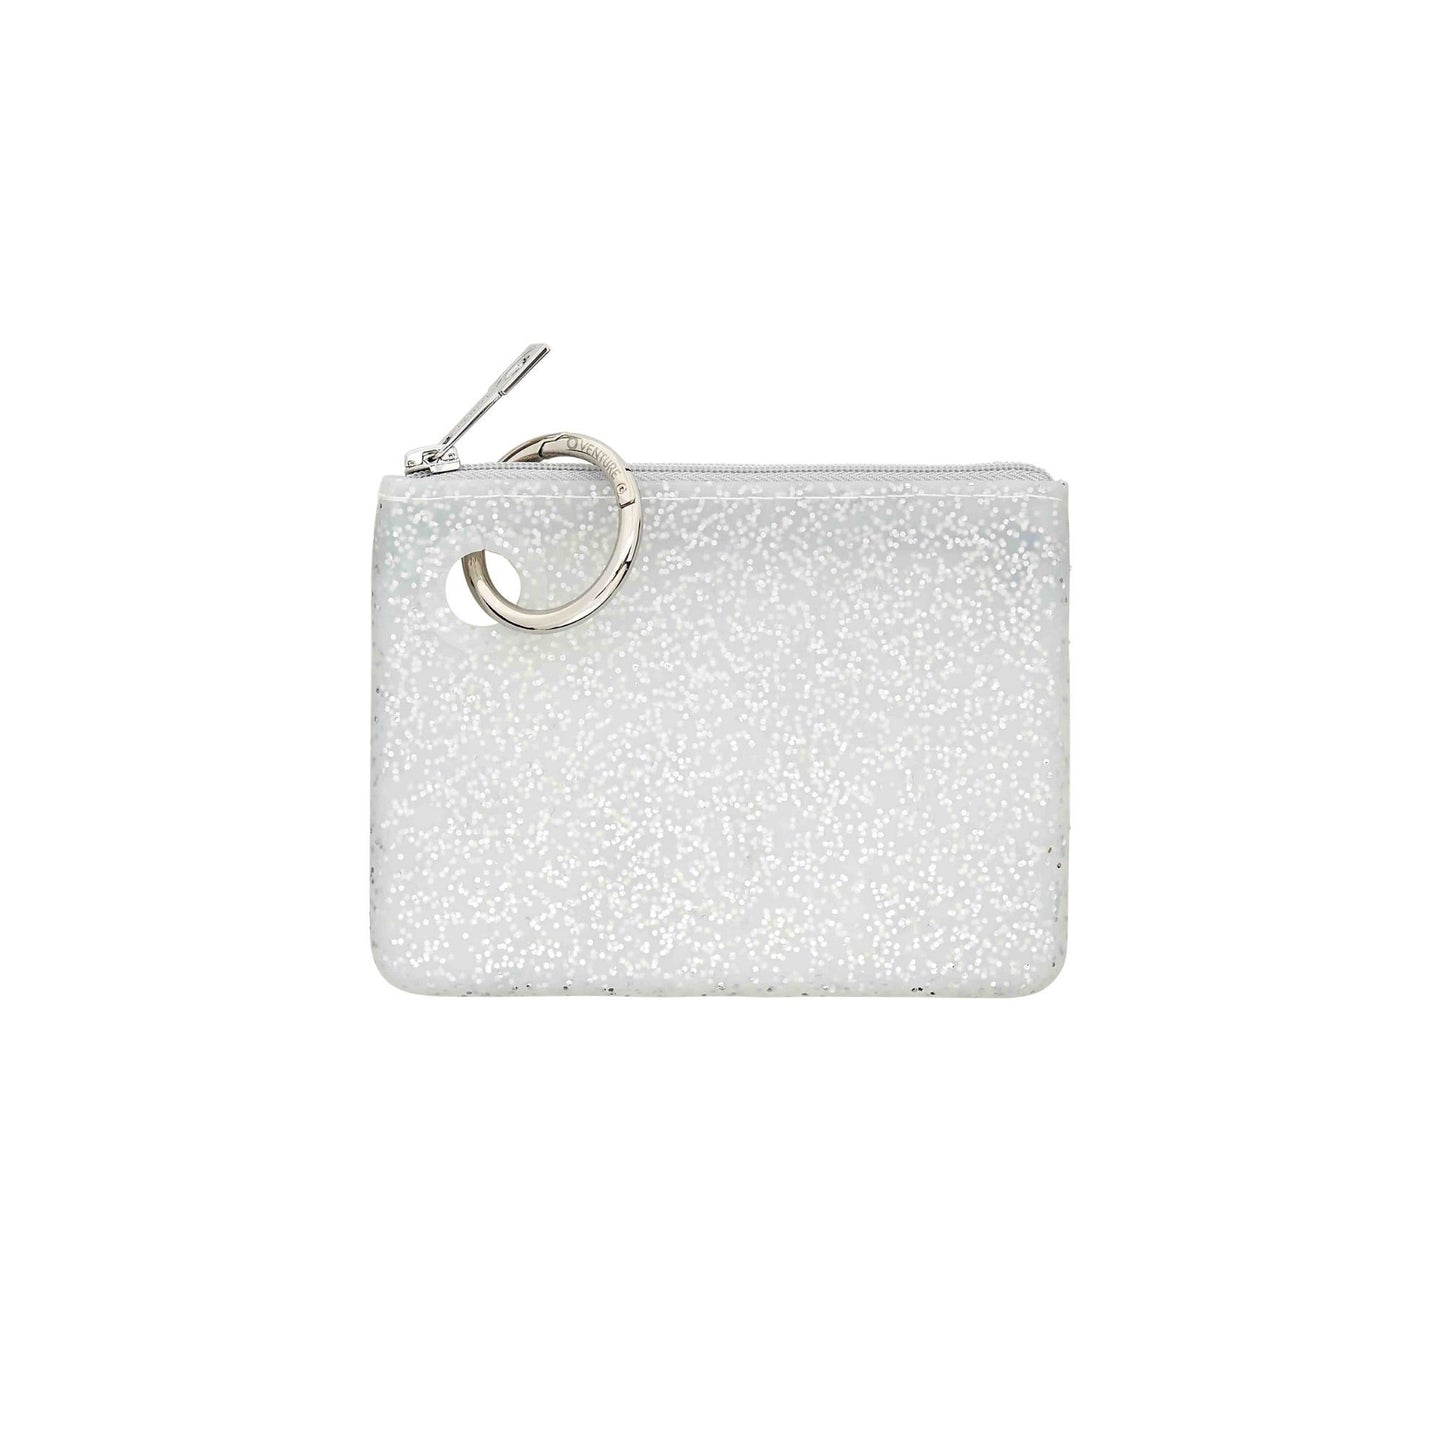 Mini silicone pouch in quicksilver confetti with silver glitter